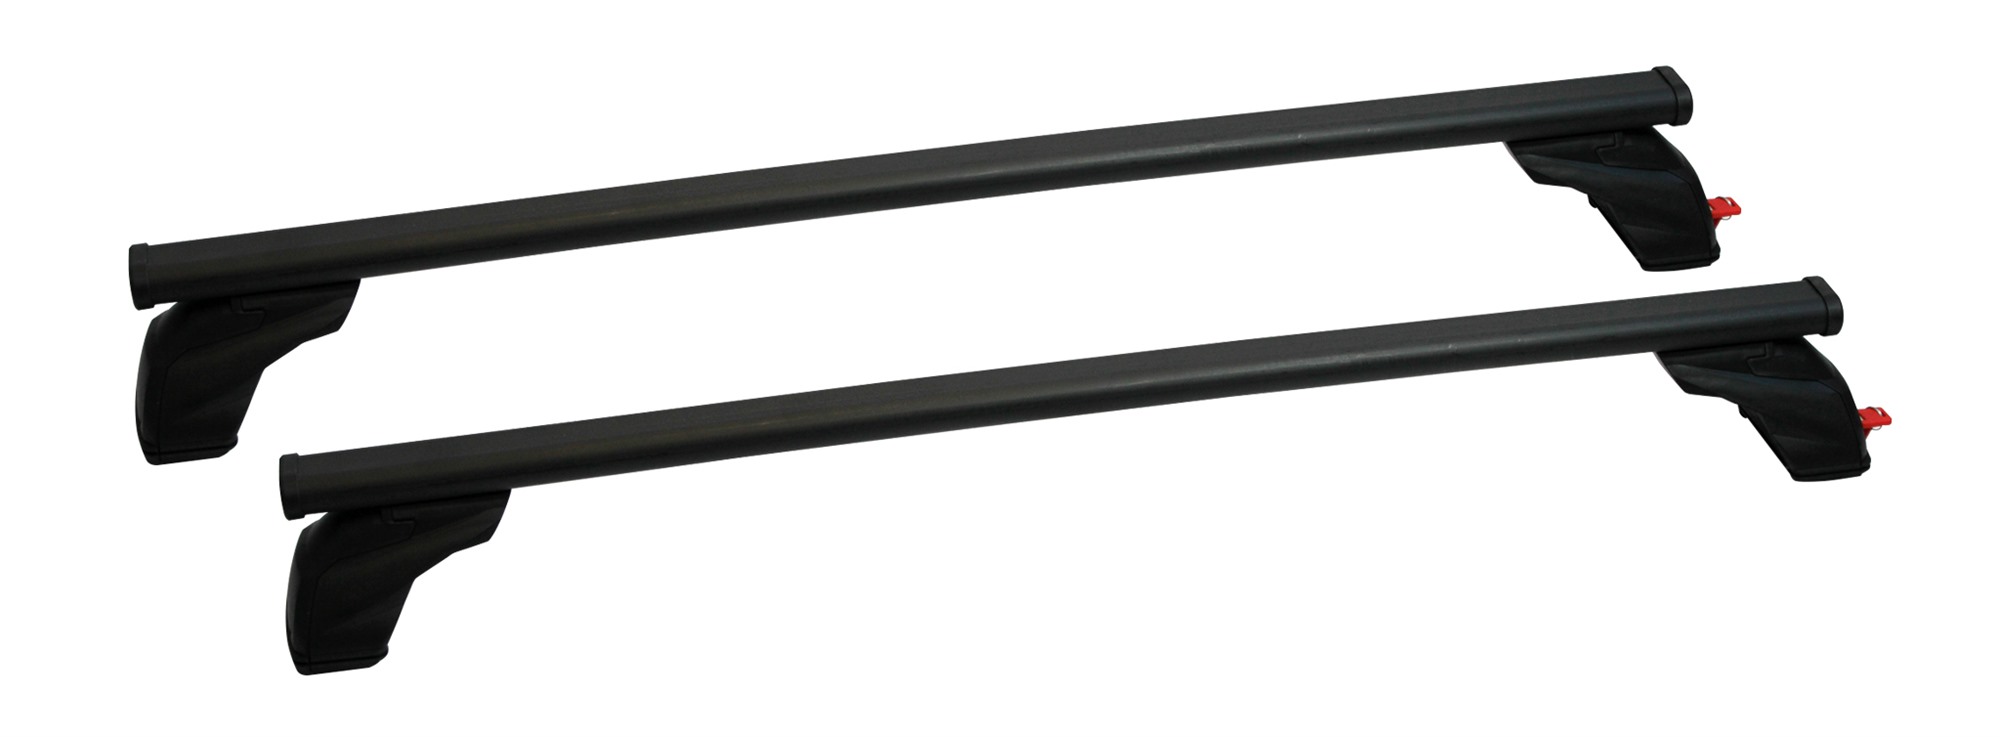 Σετ Μπάρες Οροφής Σιδερένιες με τα ποδια 127εκ για Volvo V50 5D 2004-2012 2τμχ Pacific G3